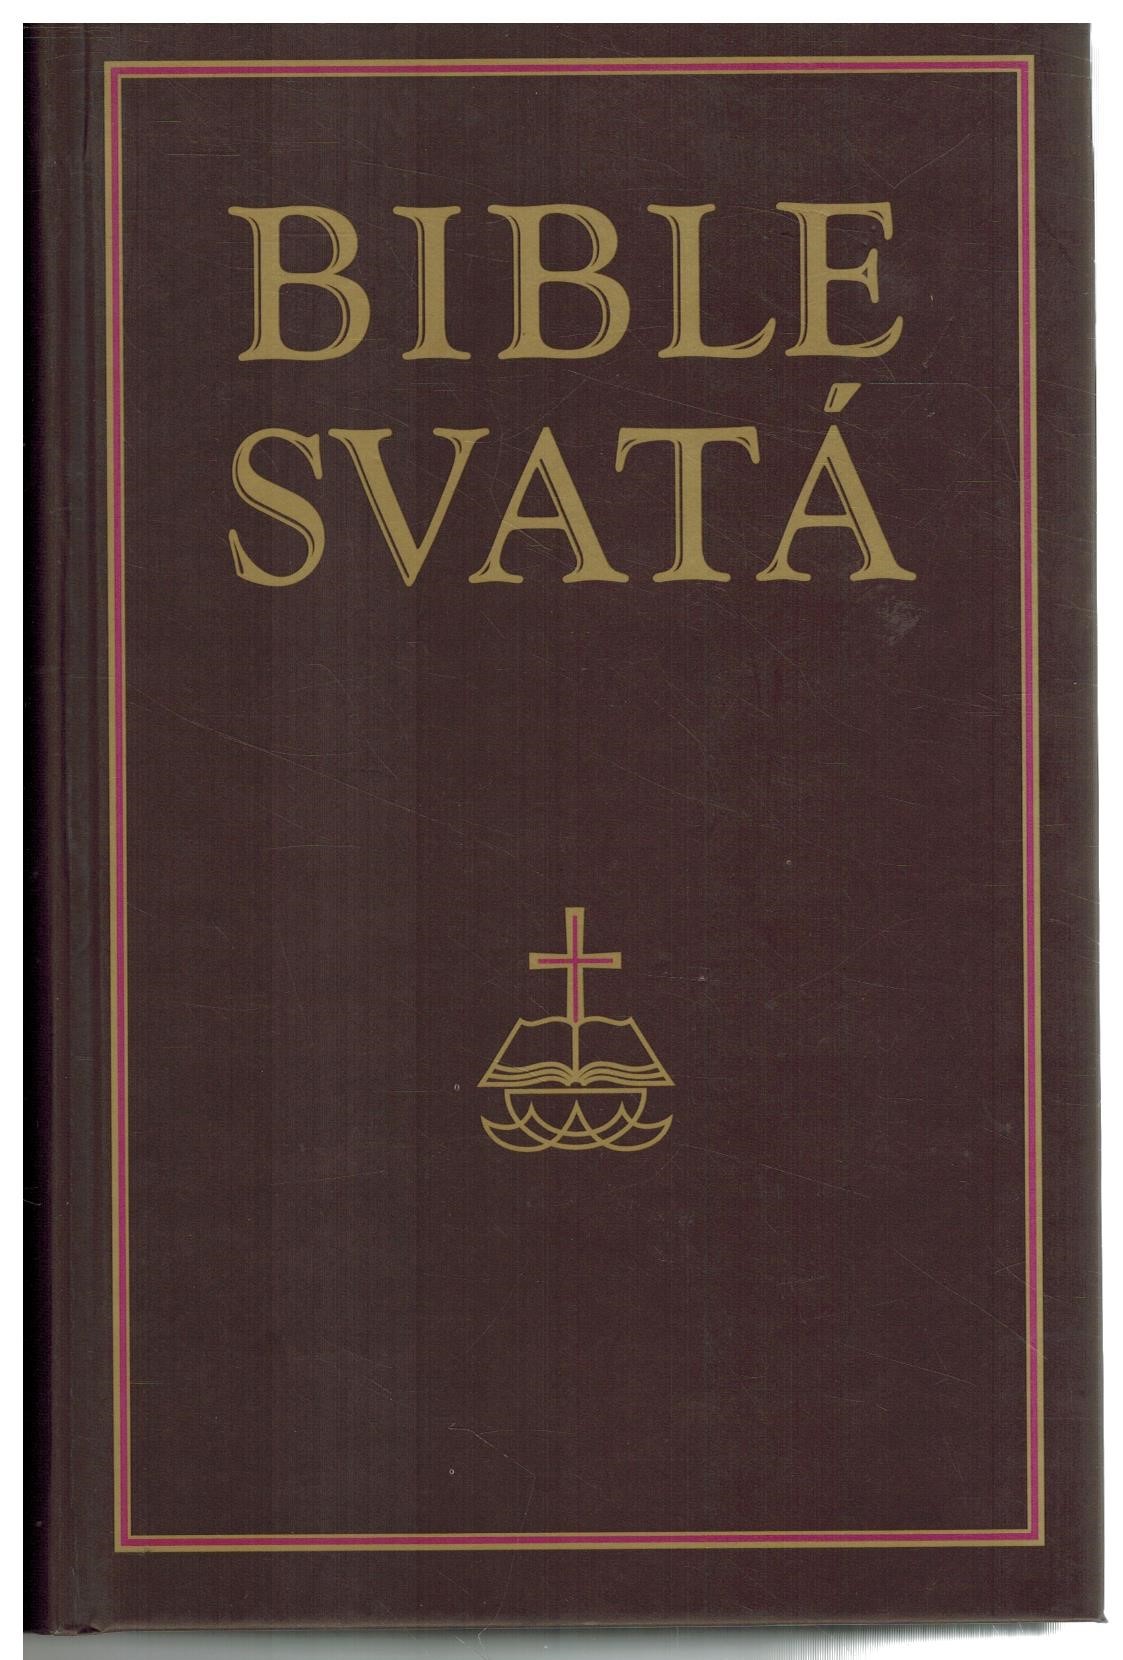 BIBLE SVATÁ